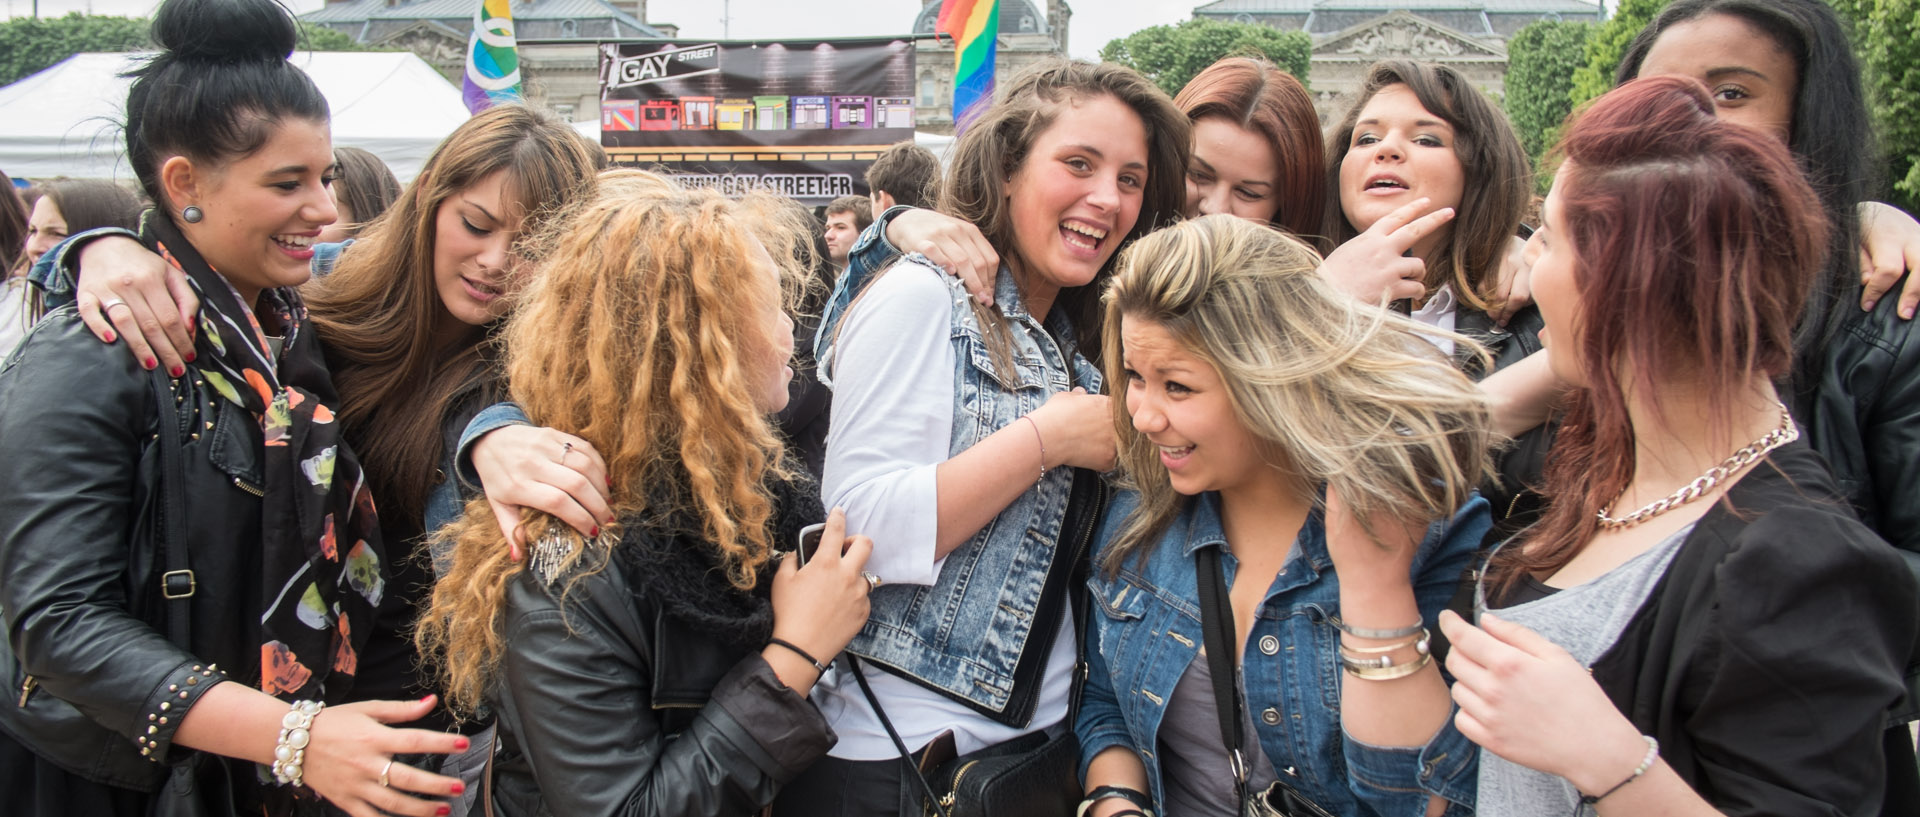 Samedi 1er juin 2013, 16:44, défilé de la lesbian et gay pride, place de la République, Lille